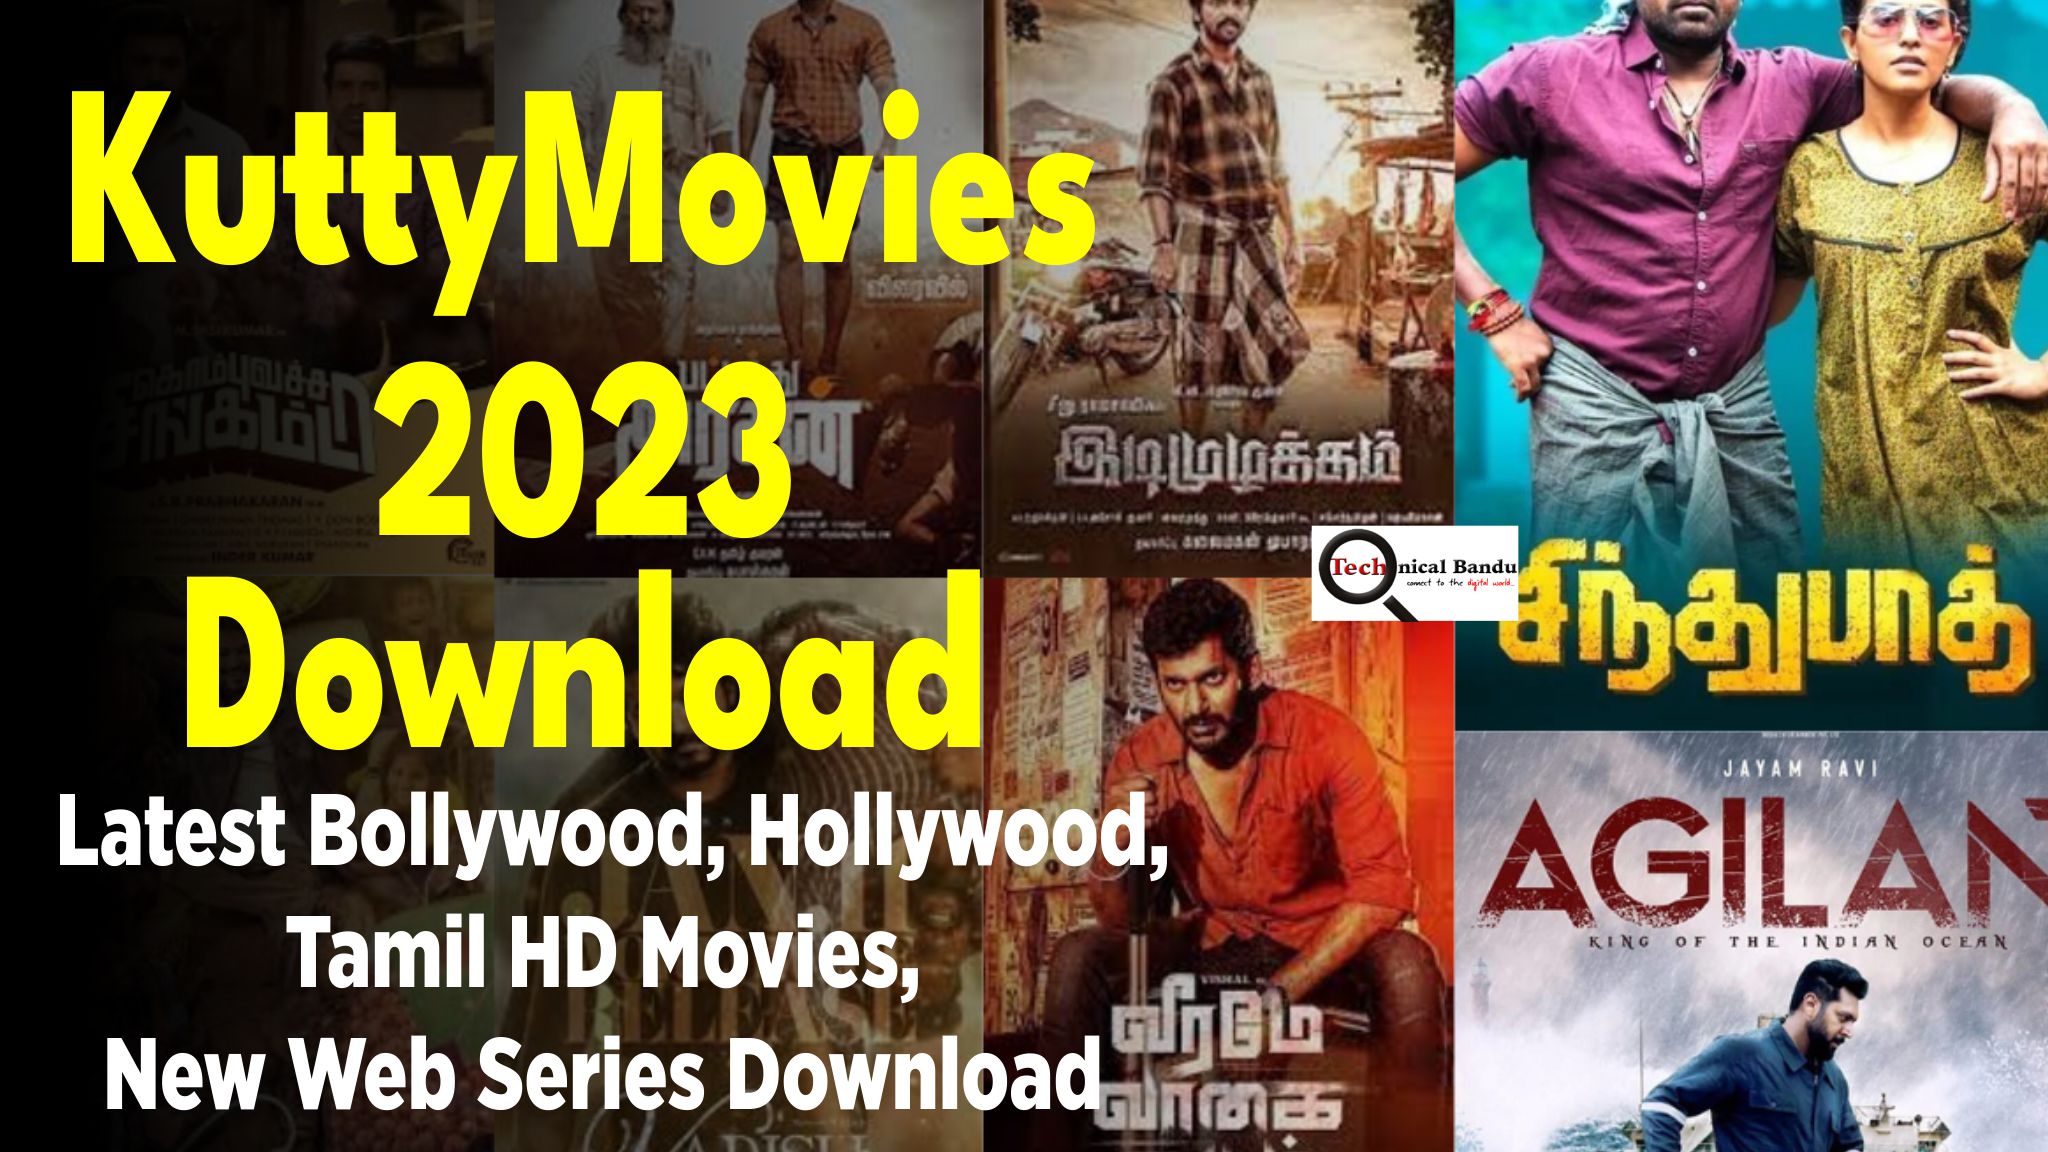 KuttyMovies, KuttyMovies download 2023, KuttyMovies 2023, Kuttymovies 2023, Kutty Movies Download,